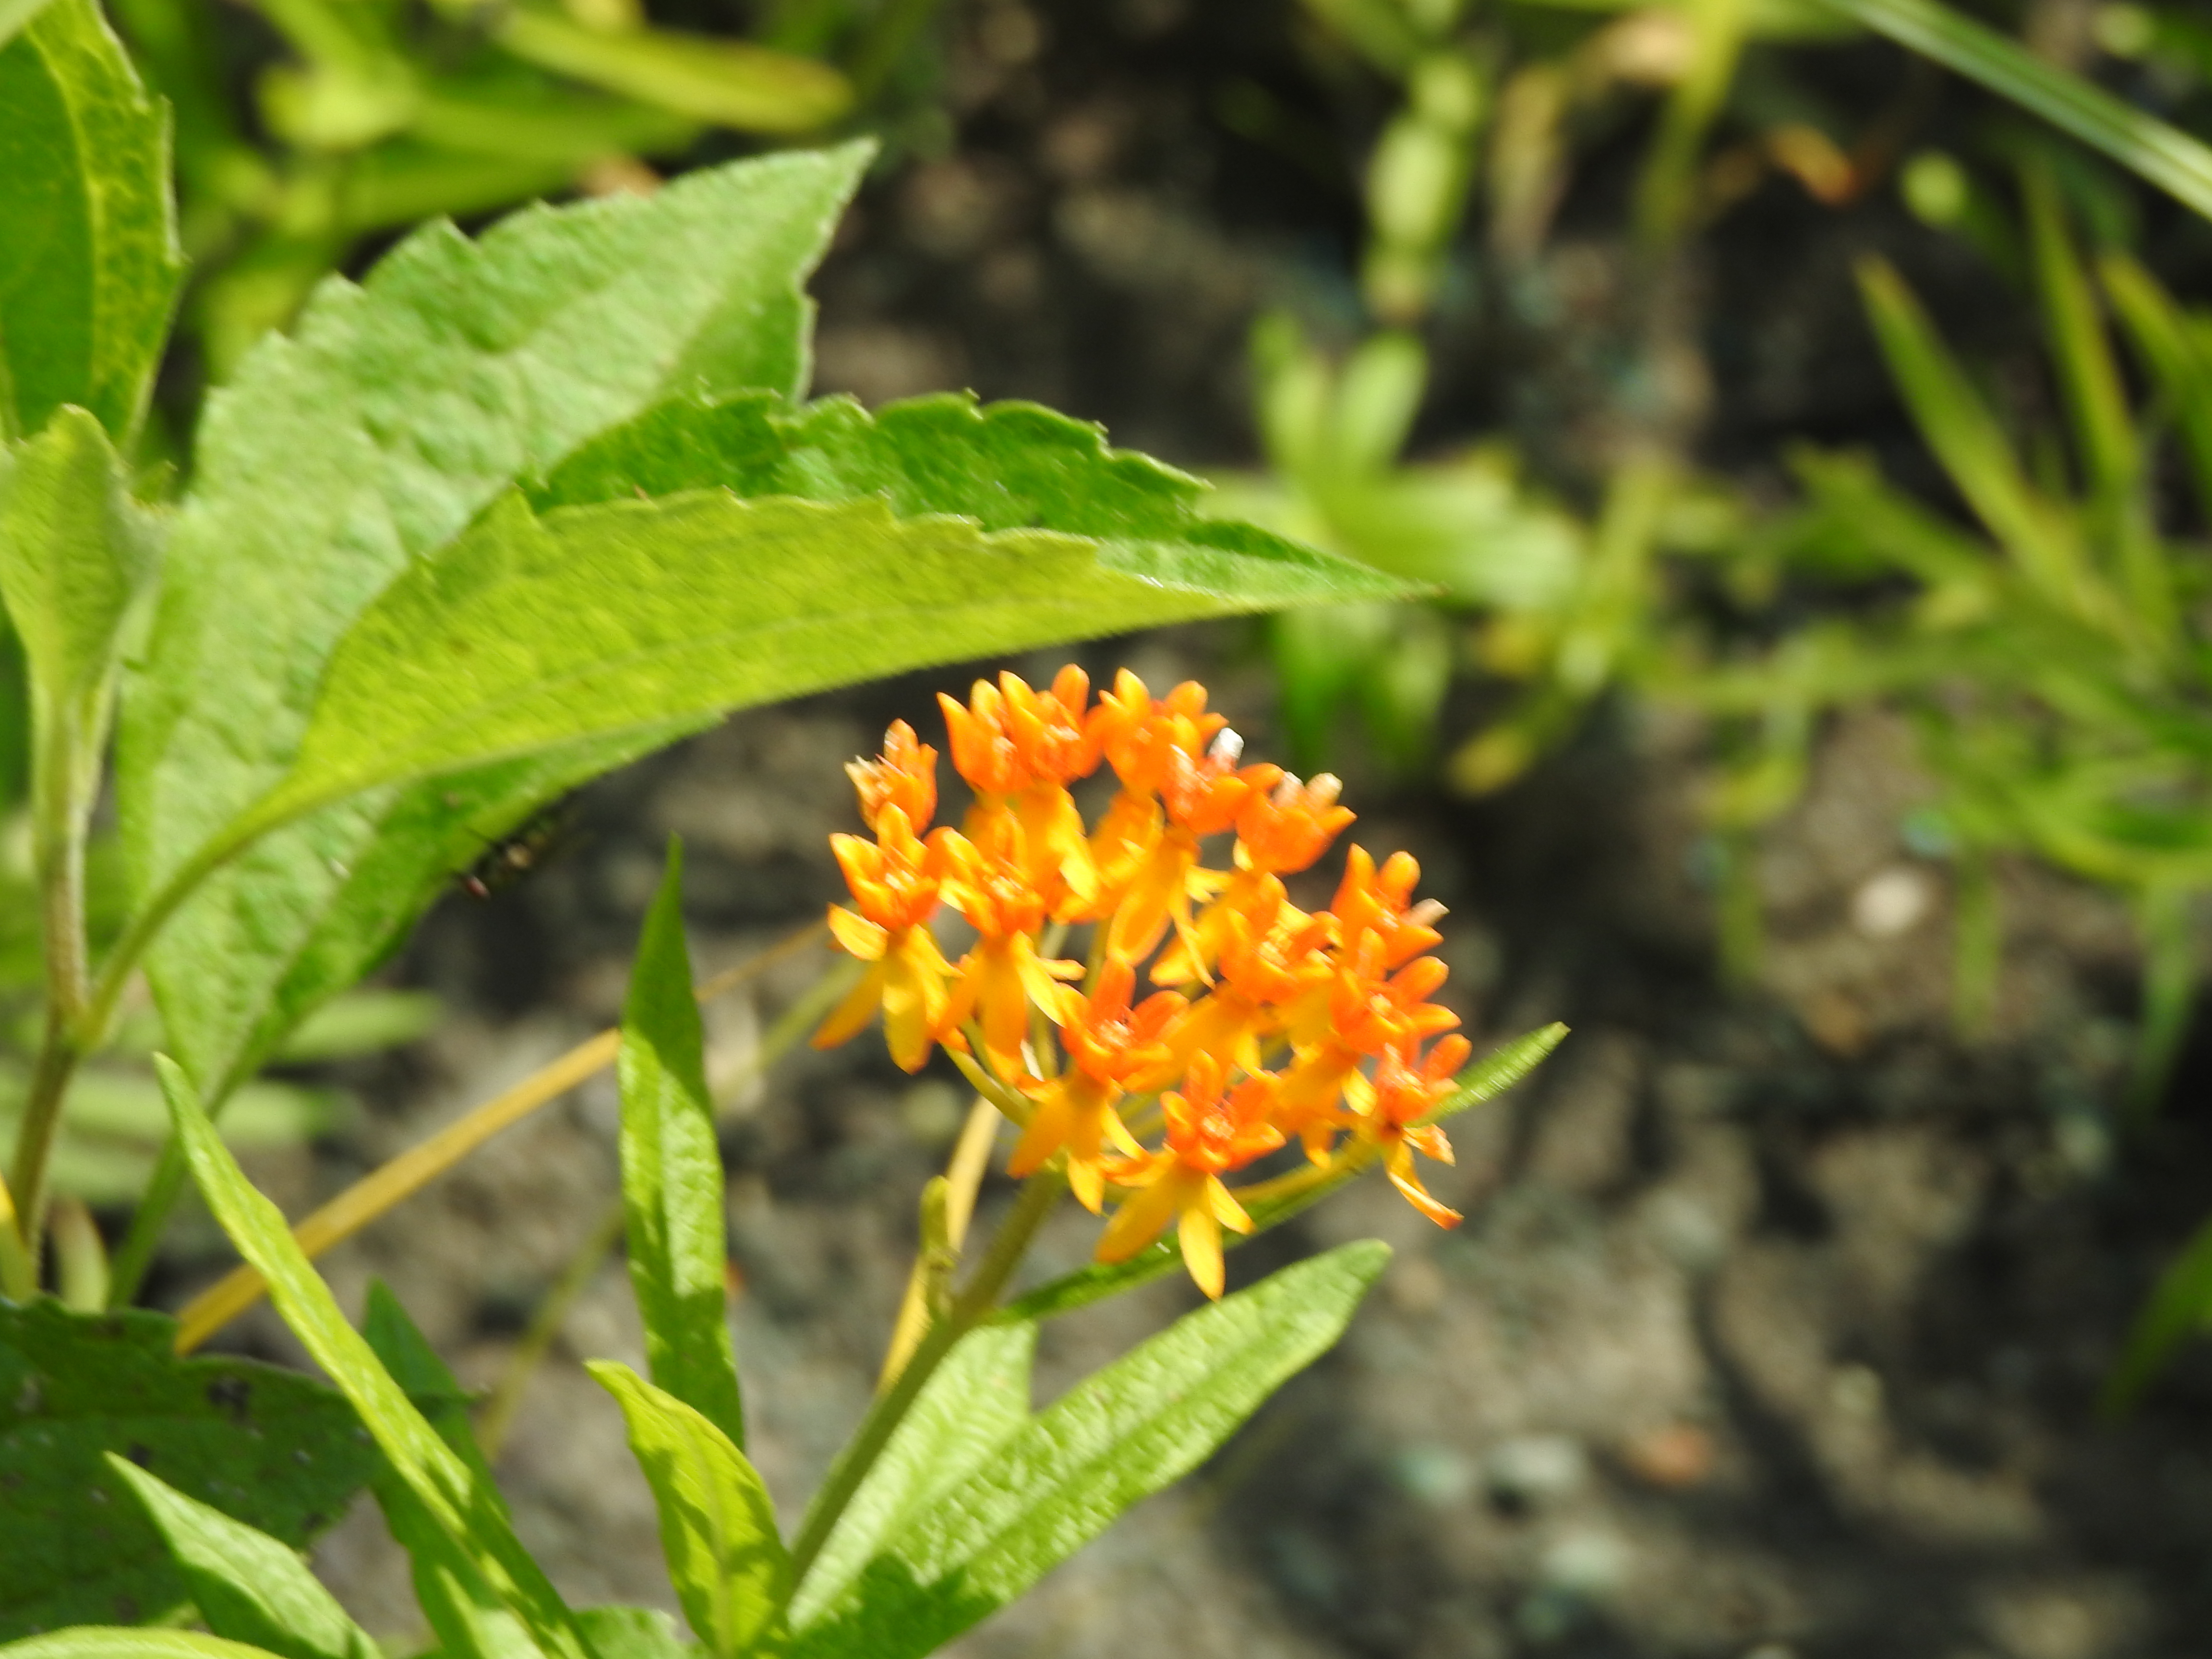 An orange flower